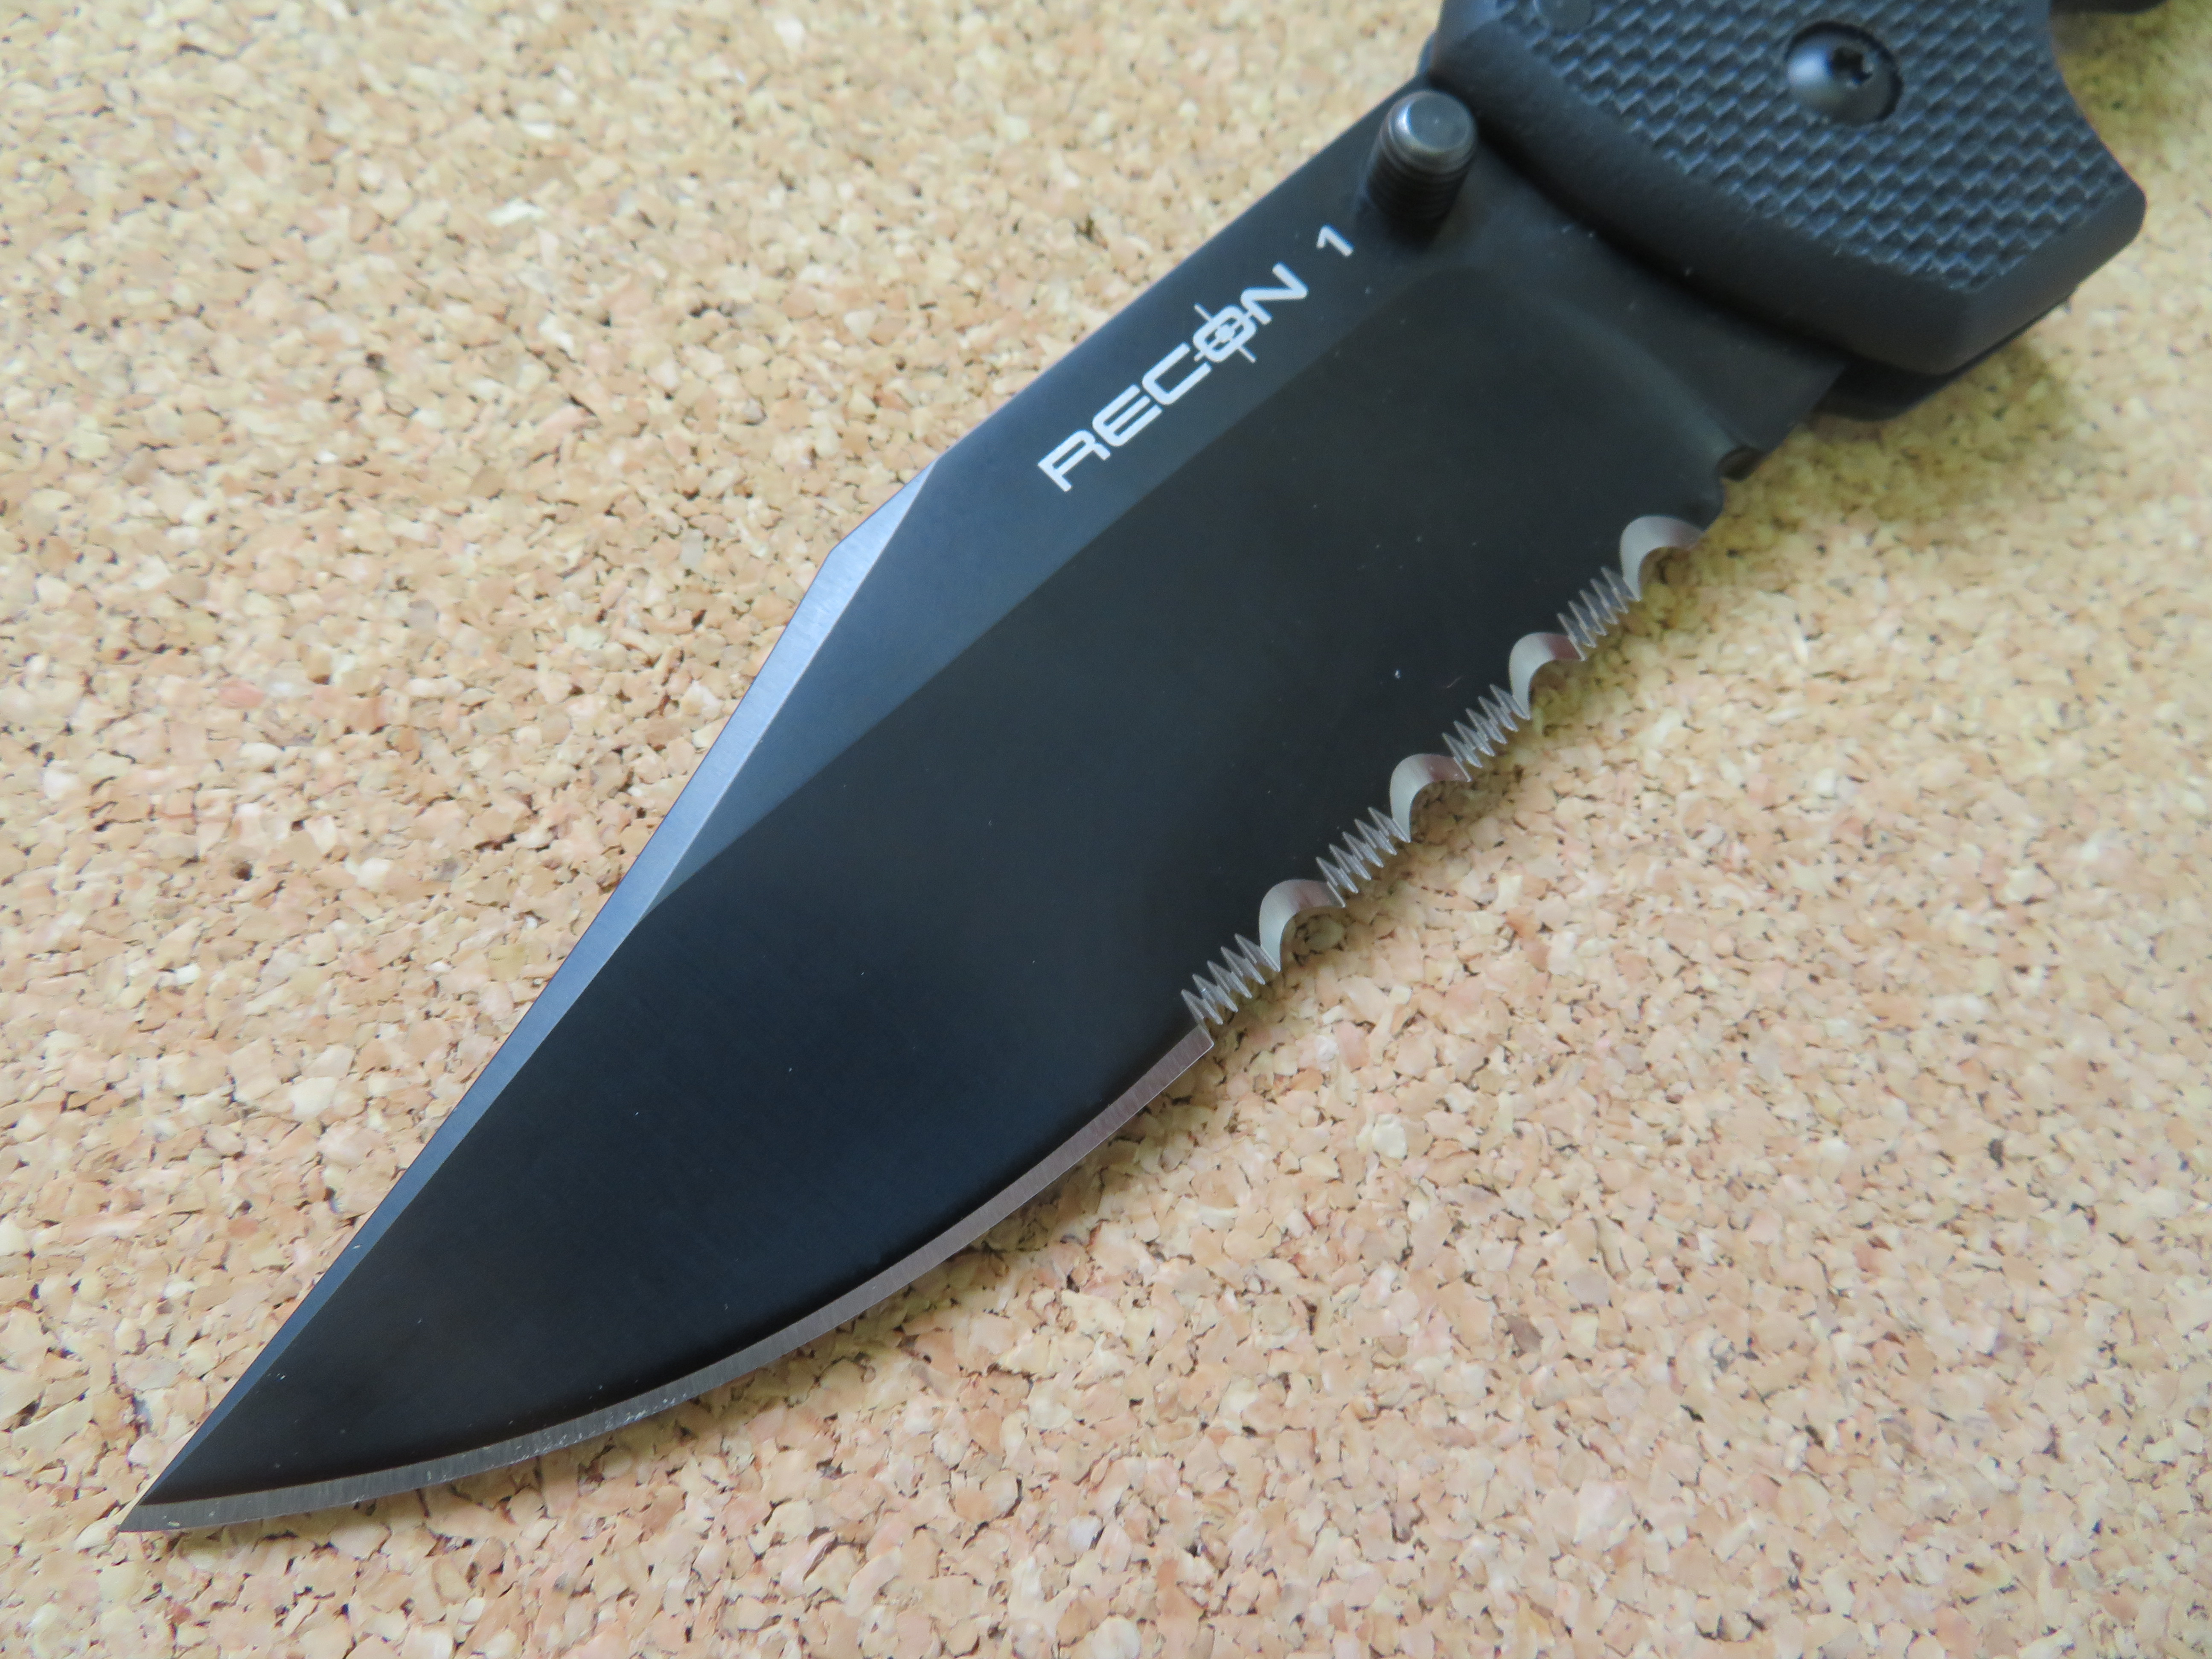 Detail čepele nože Recon 1 – hrot typu clip point a kombinované ostří.